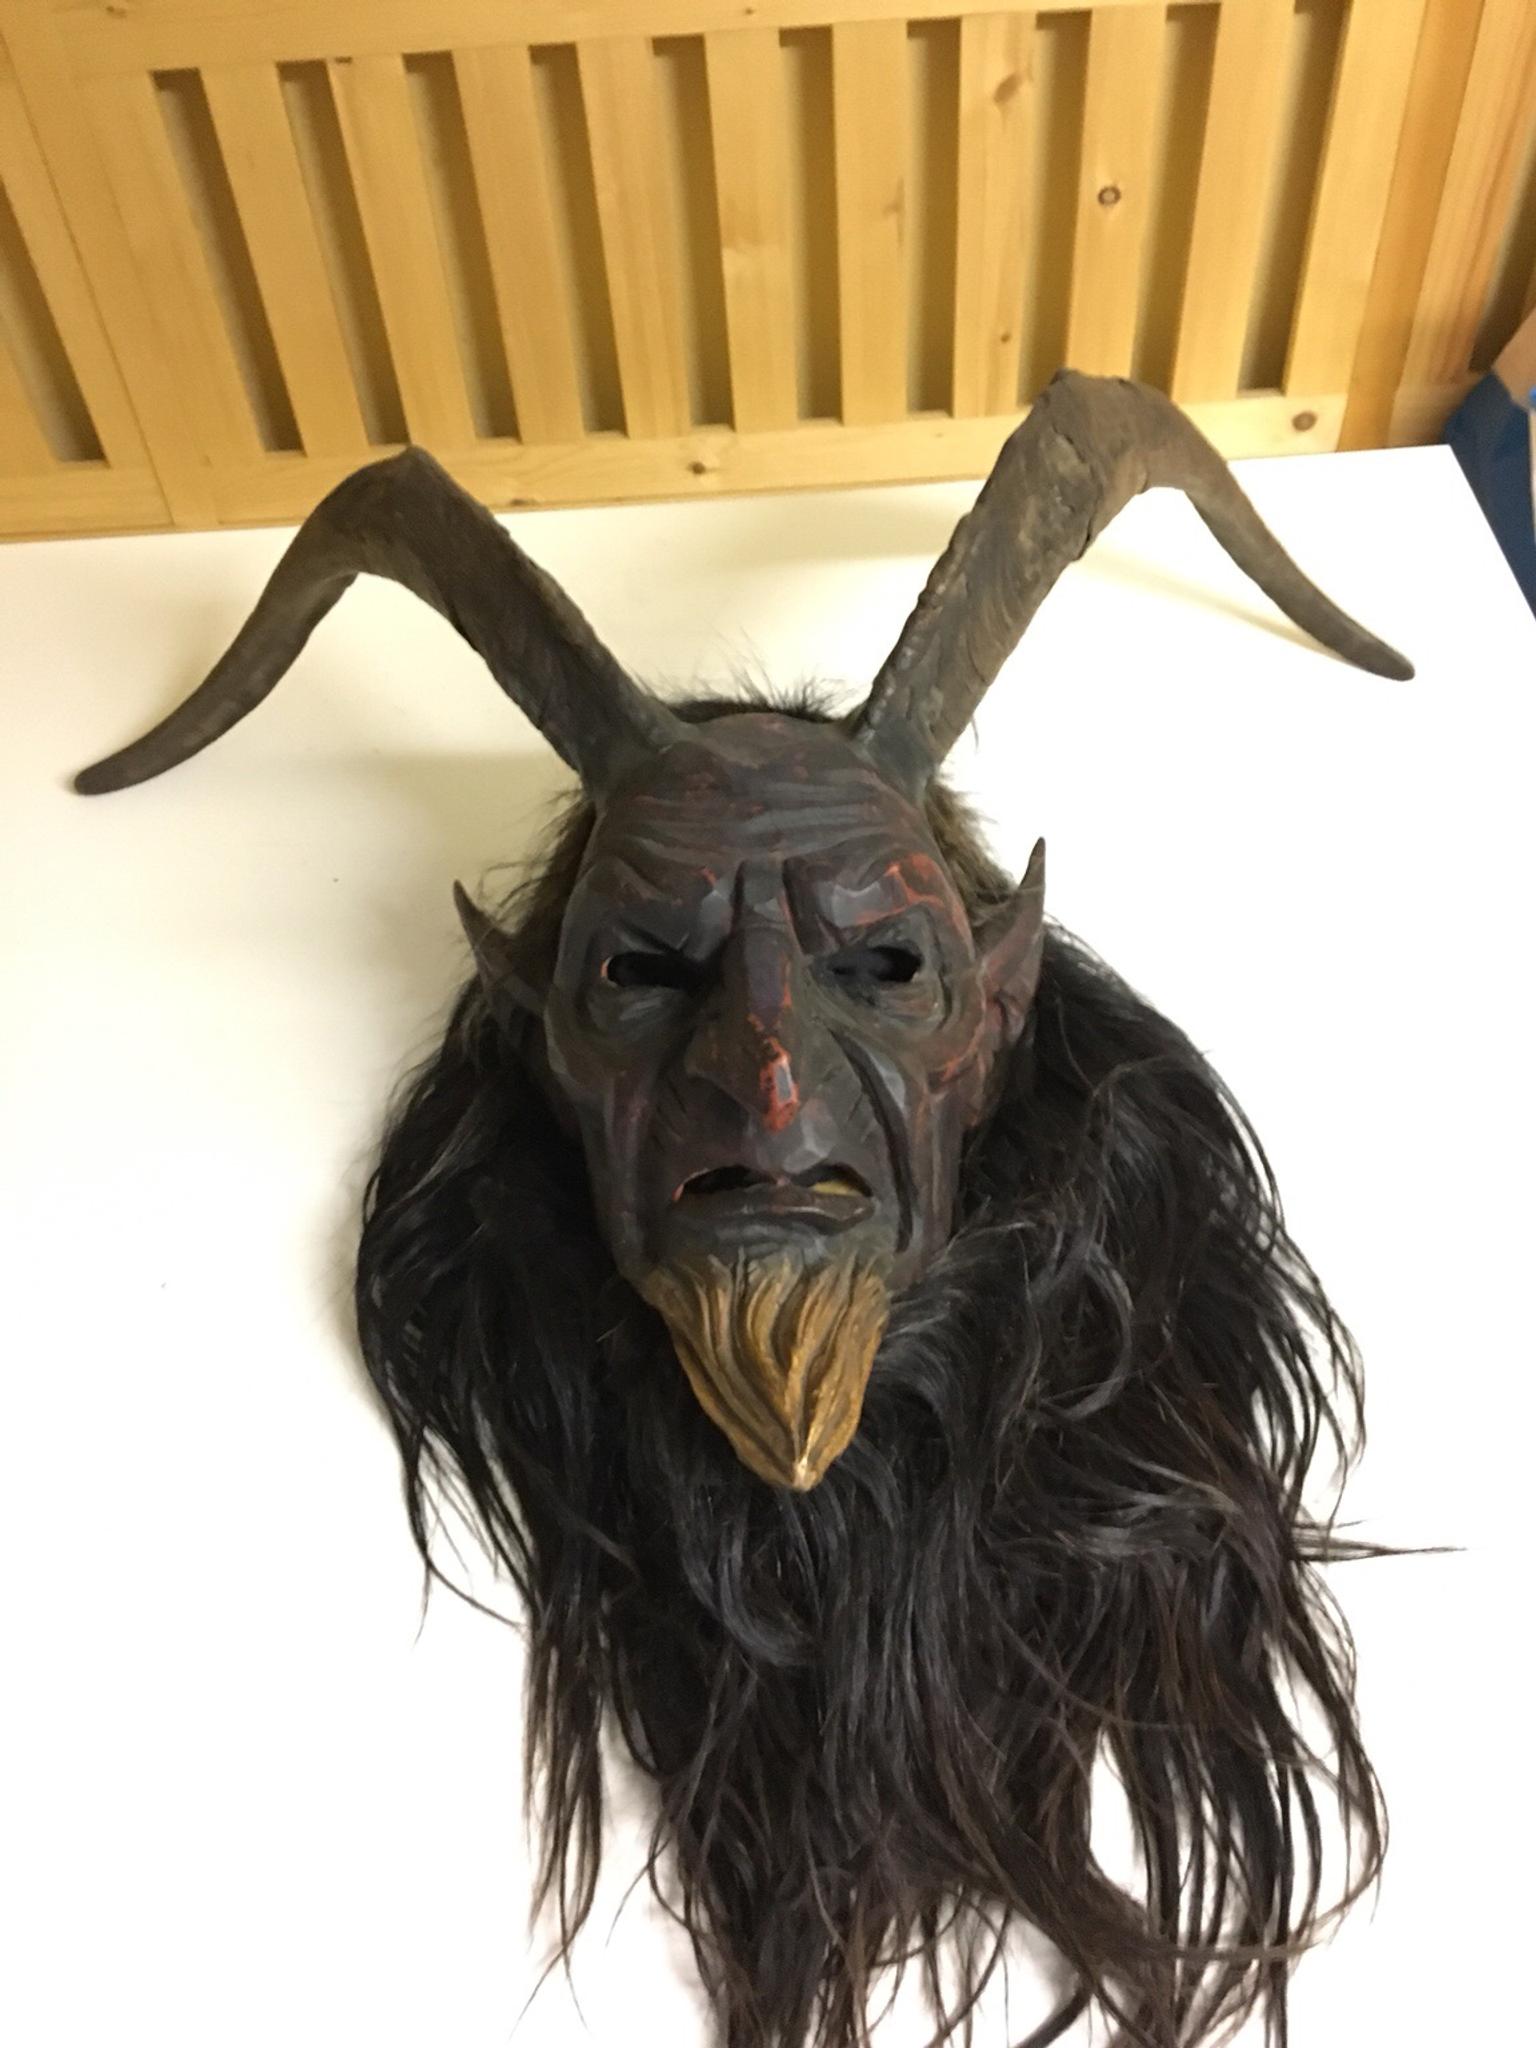 Perchten Krampus Maske In 5230 Mattighofen For 240 00 For Sale